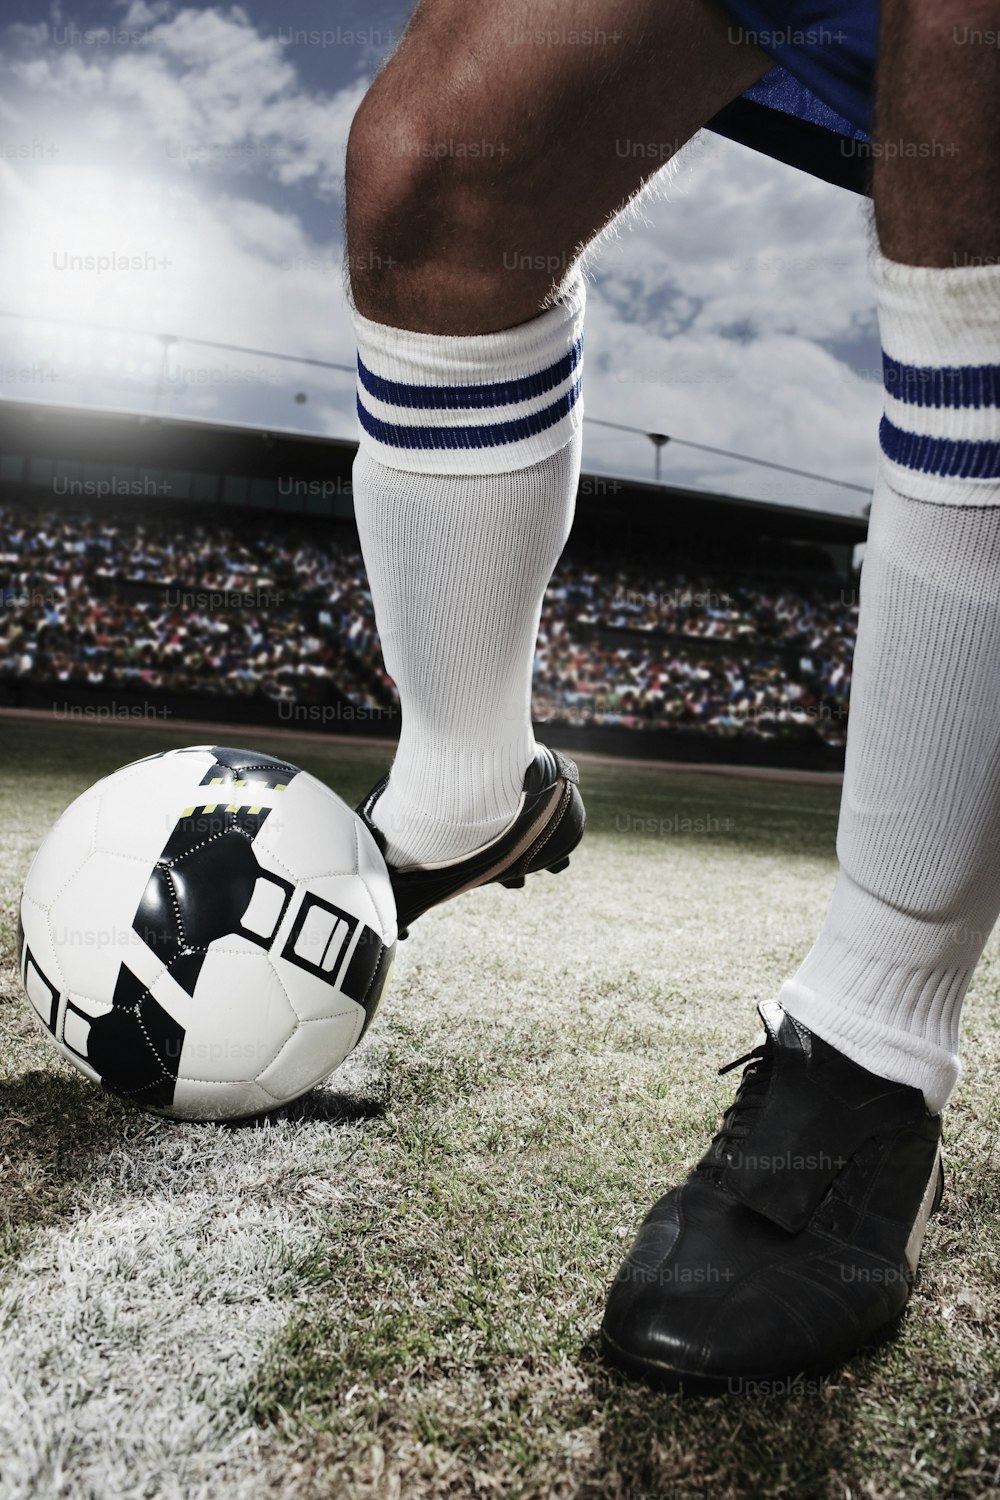 Un jugador de fútbol con el pie en una pelota de fútbol